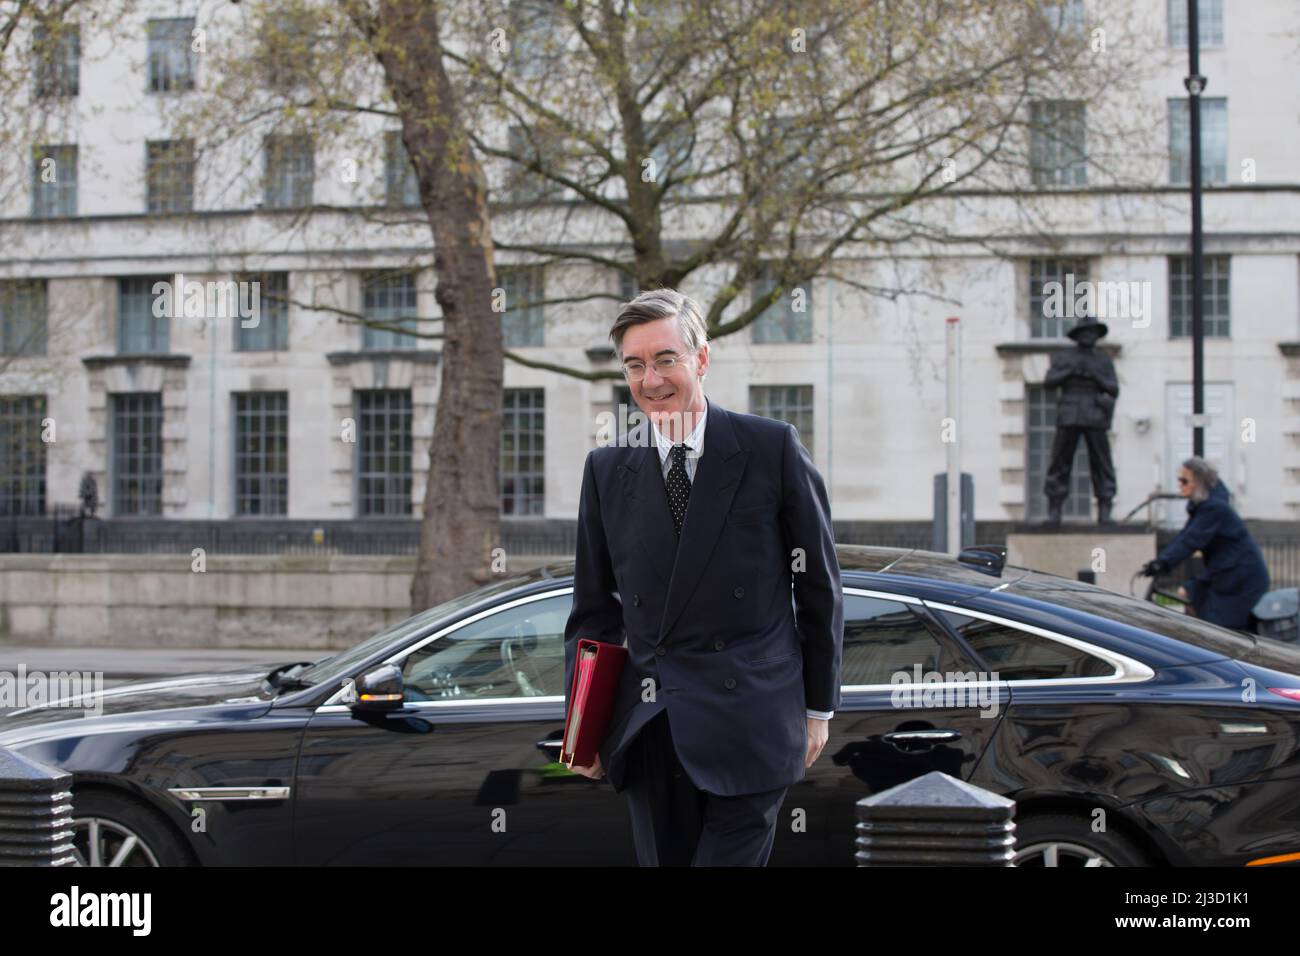 Londres royaume-uni 7th avril le ministre Jacob rees-mogg pour les opportunités de Brexit et l'efficacité gouvernementale arrive au cabinet du cabinet whitehall Banque D'Images